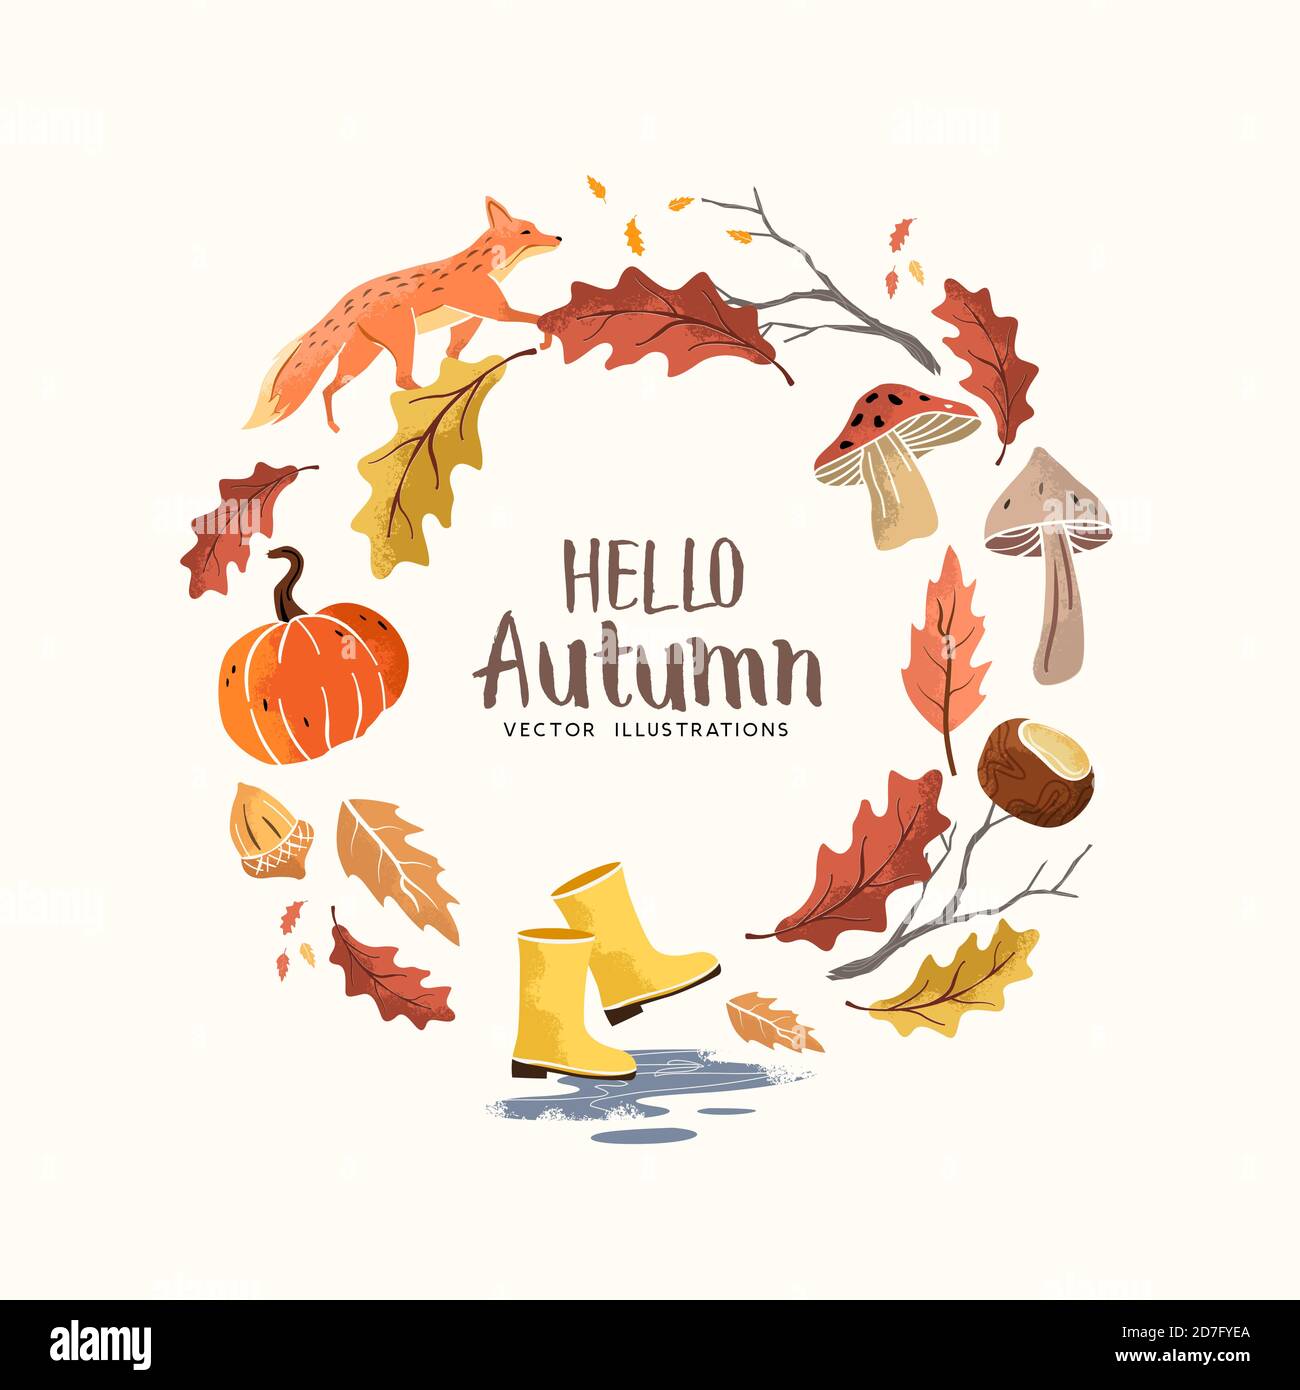 Bonjour automne! les éléments saisonniers de l'automne avec des feuilles, des noix et des champignons. Illustration du vecteur de Thanksgiving et de la moisson Illustration de Vecteur